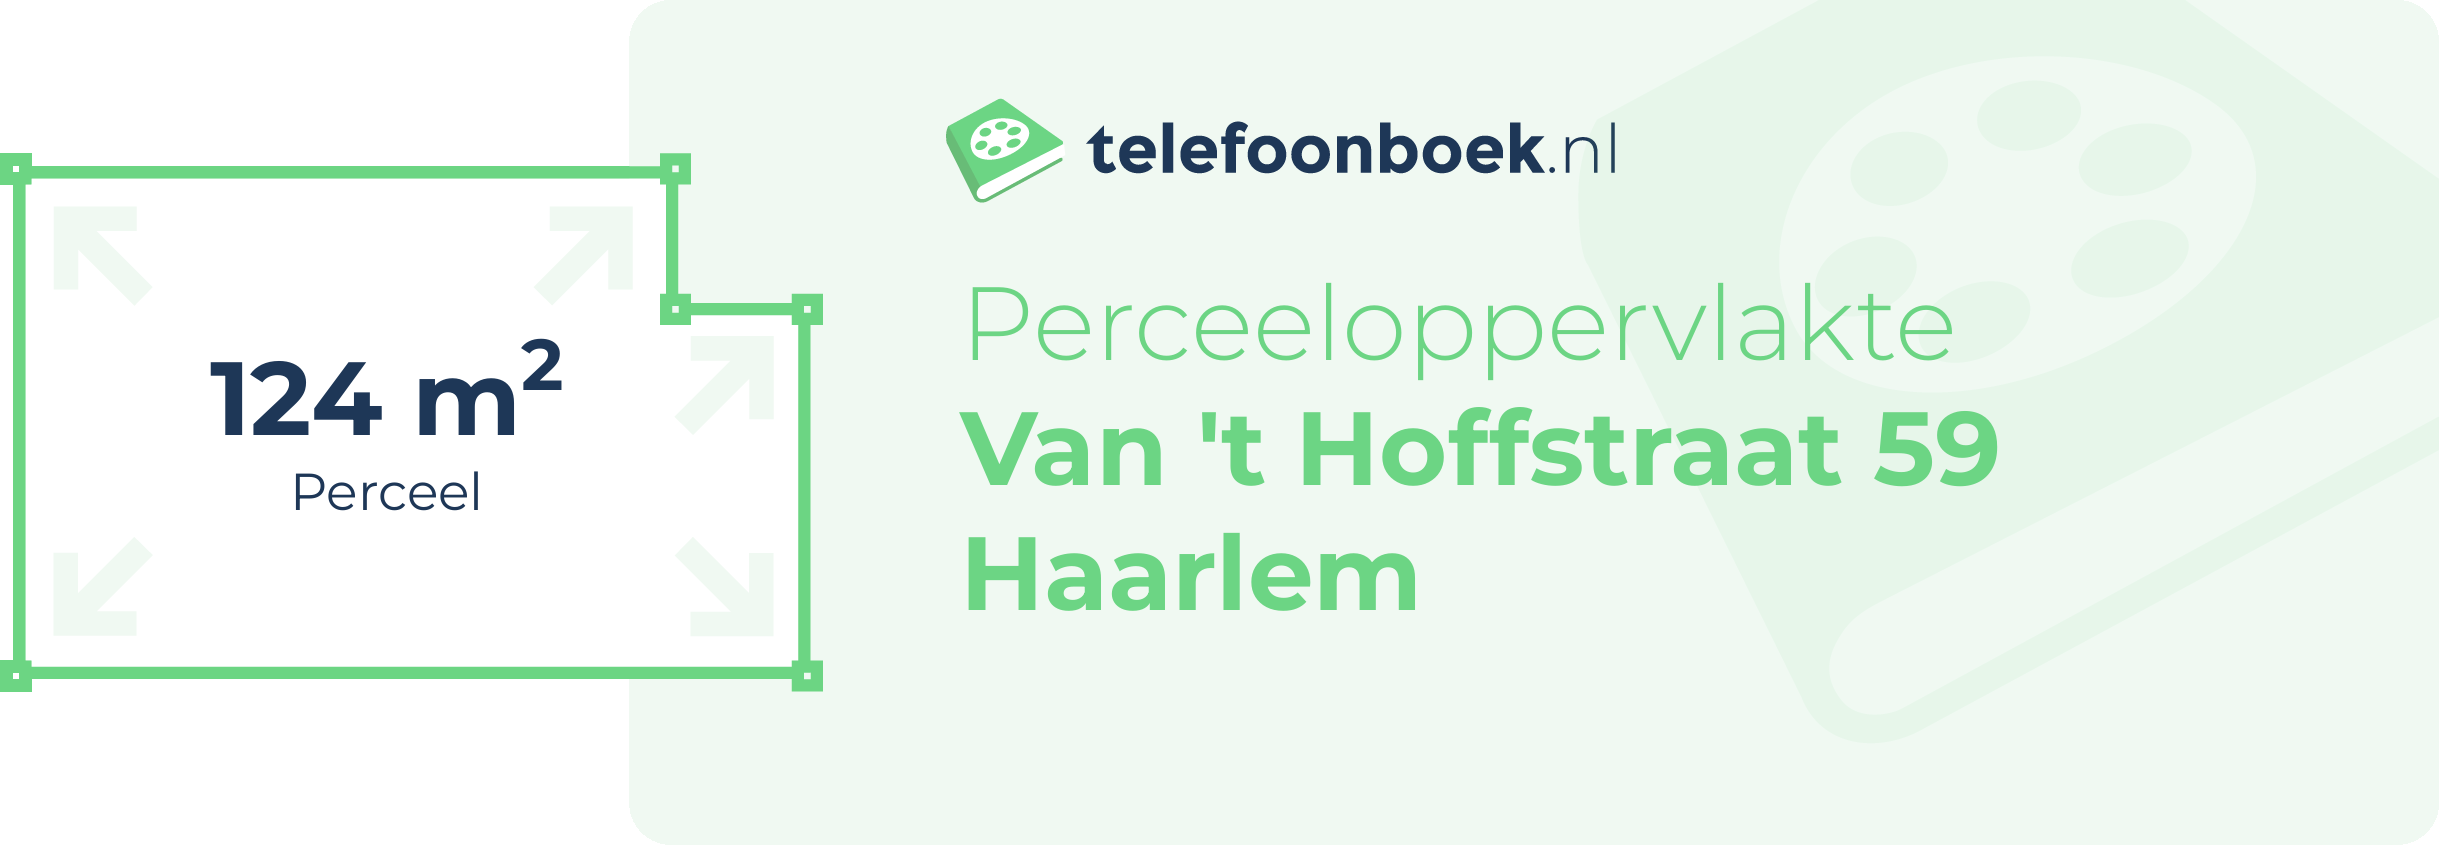 Perceeloppervlakte Van 't Hoffstraat 59 Haarlem